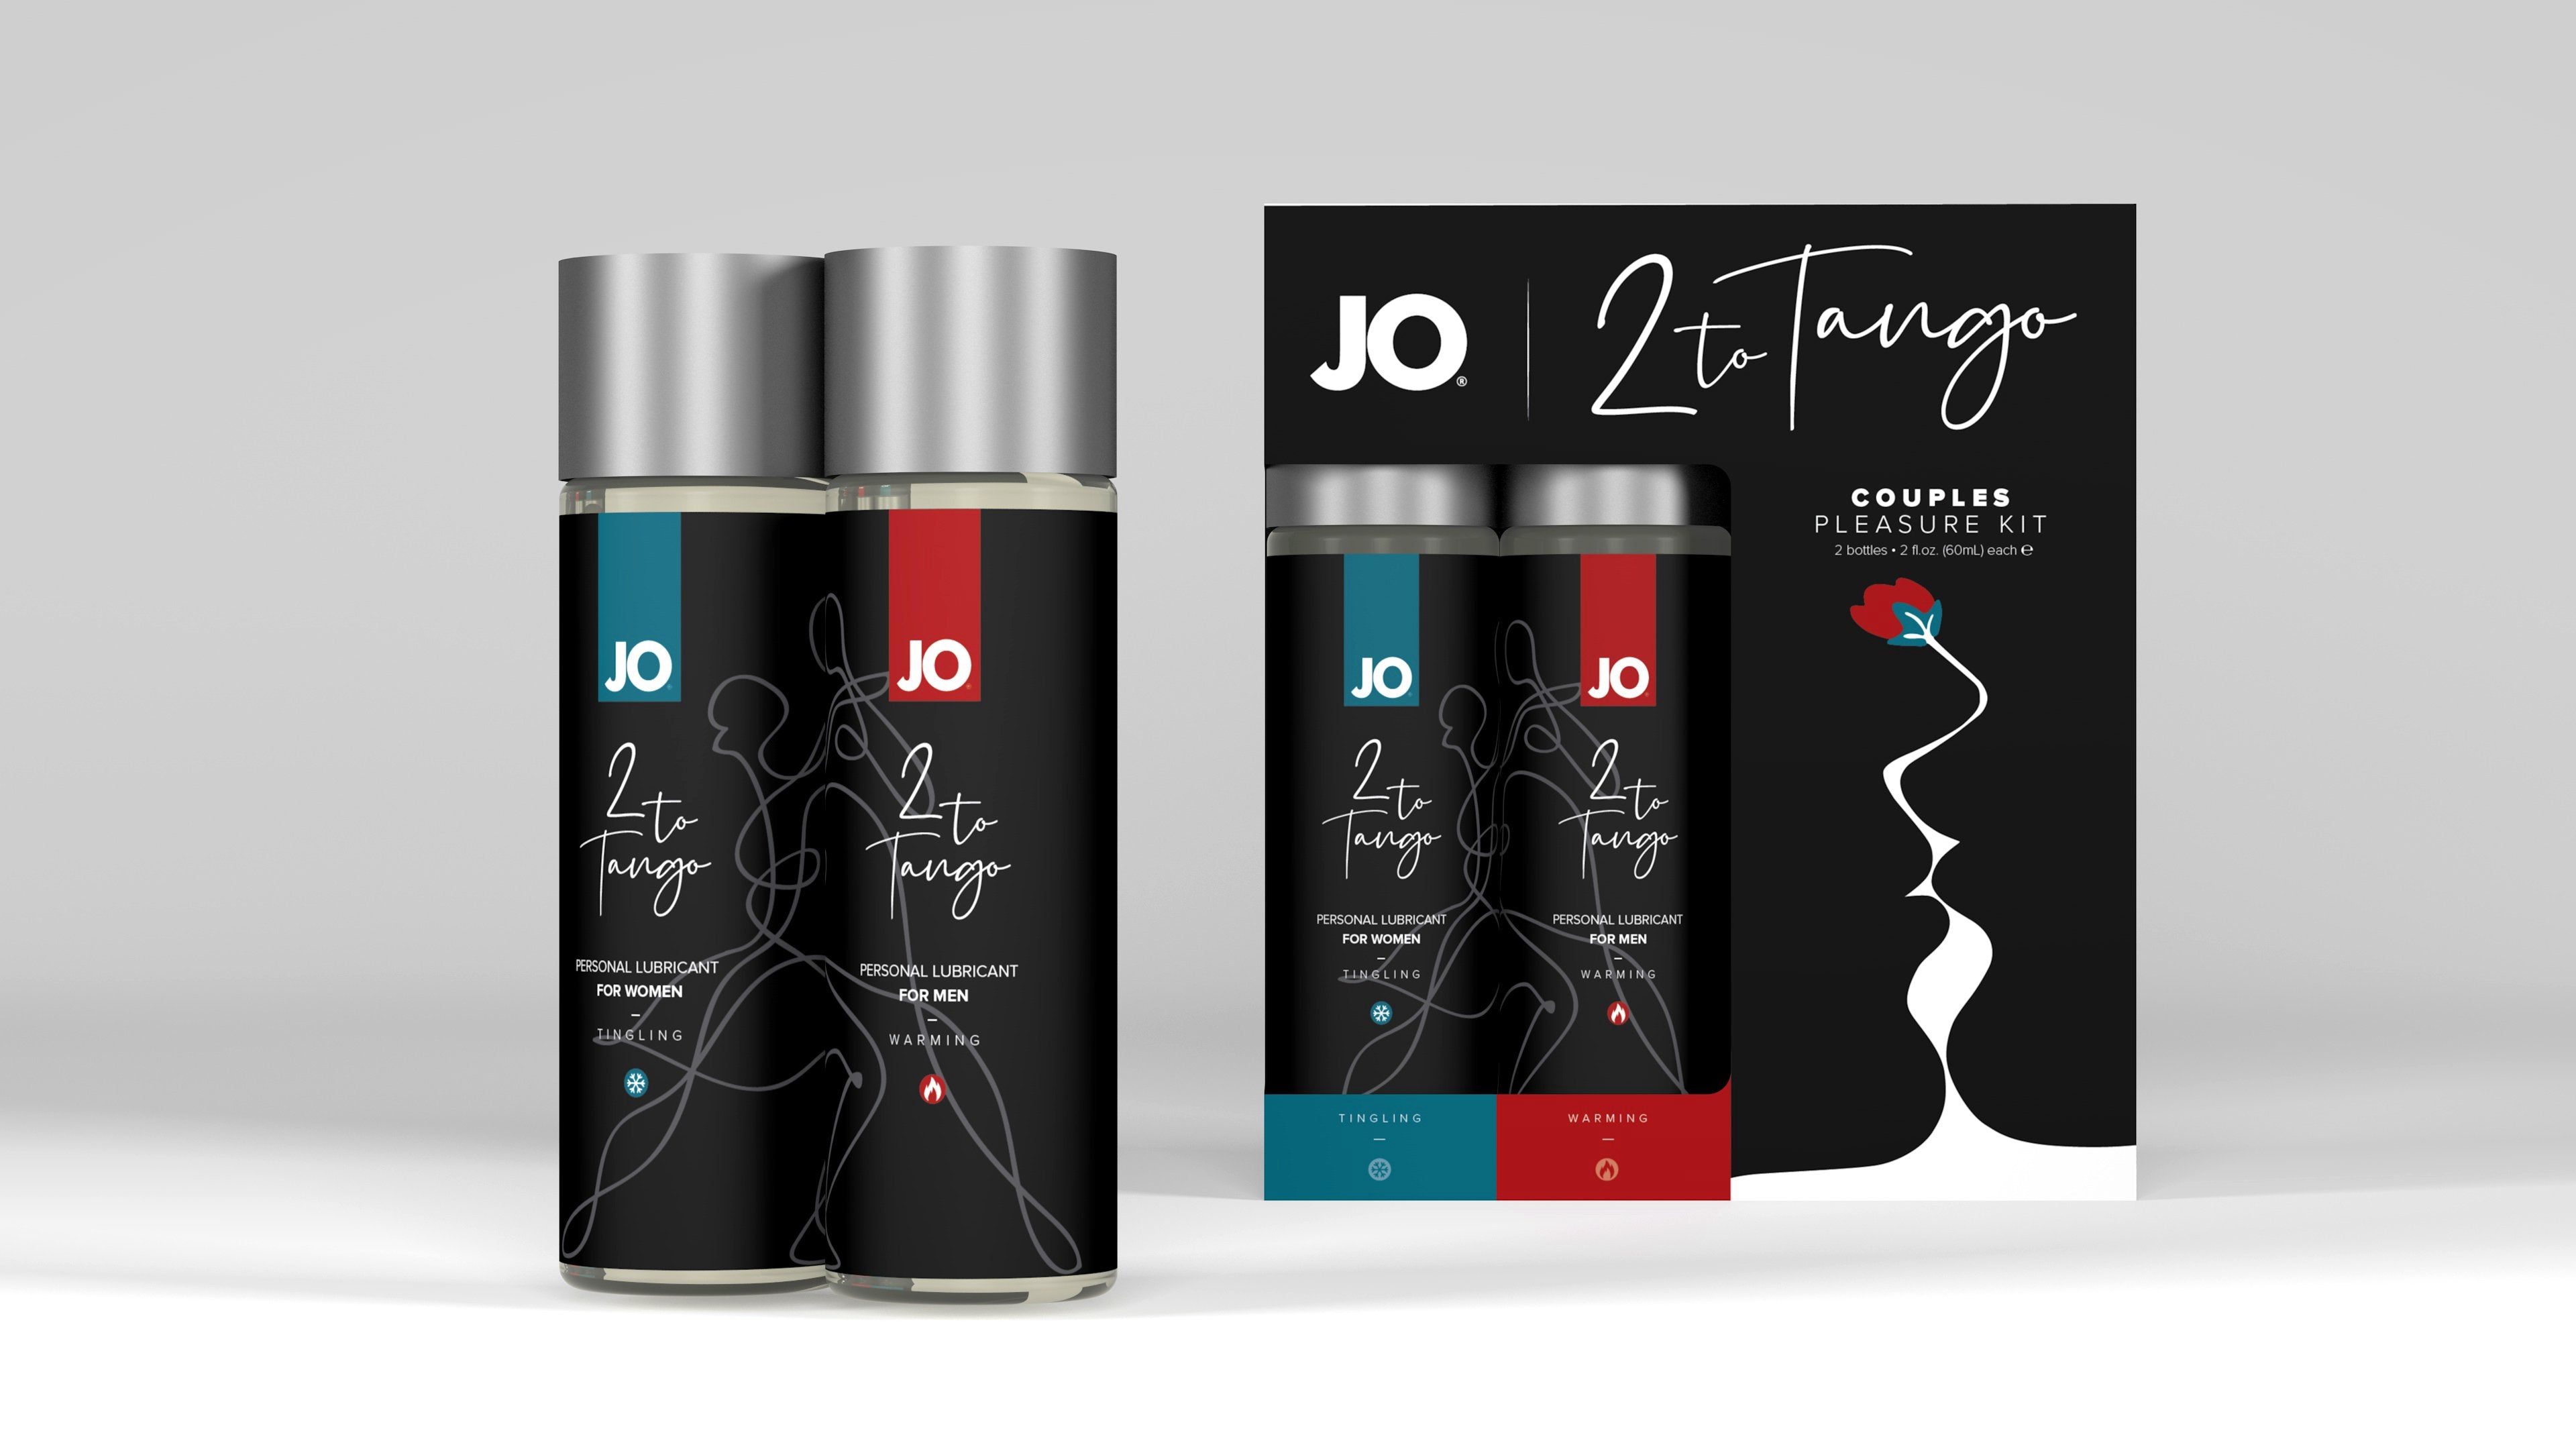 JO 2 To Tango Couples Pleasure Kit  2 x 2 Oz / 60 ml